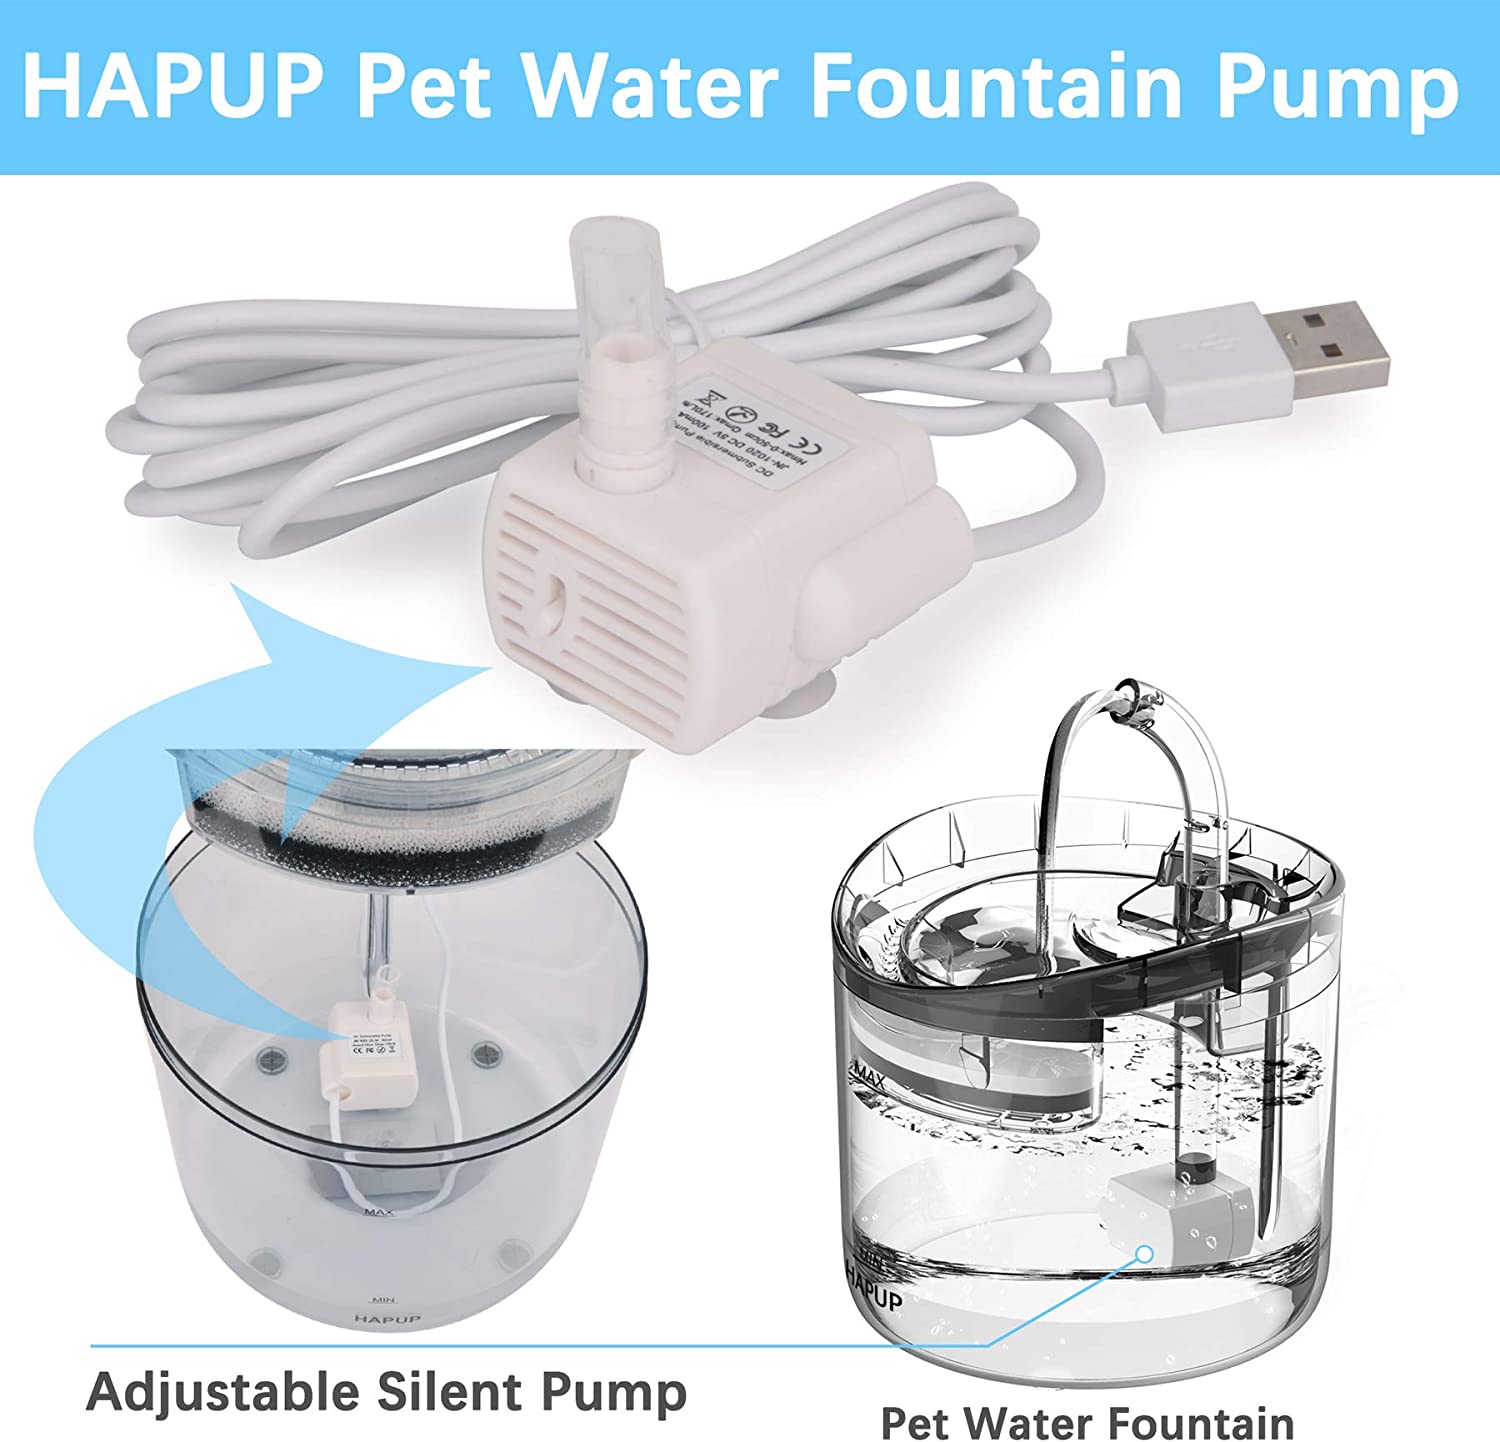  پمپ آب چشمه گربه HAPUP را می توان به طور گسترده به عنوان یک جایگزین یا به عنوان یک پمپ پشتیبان در طول تمیز کردن پمپ استفاده کرد.